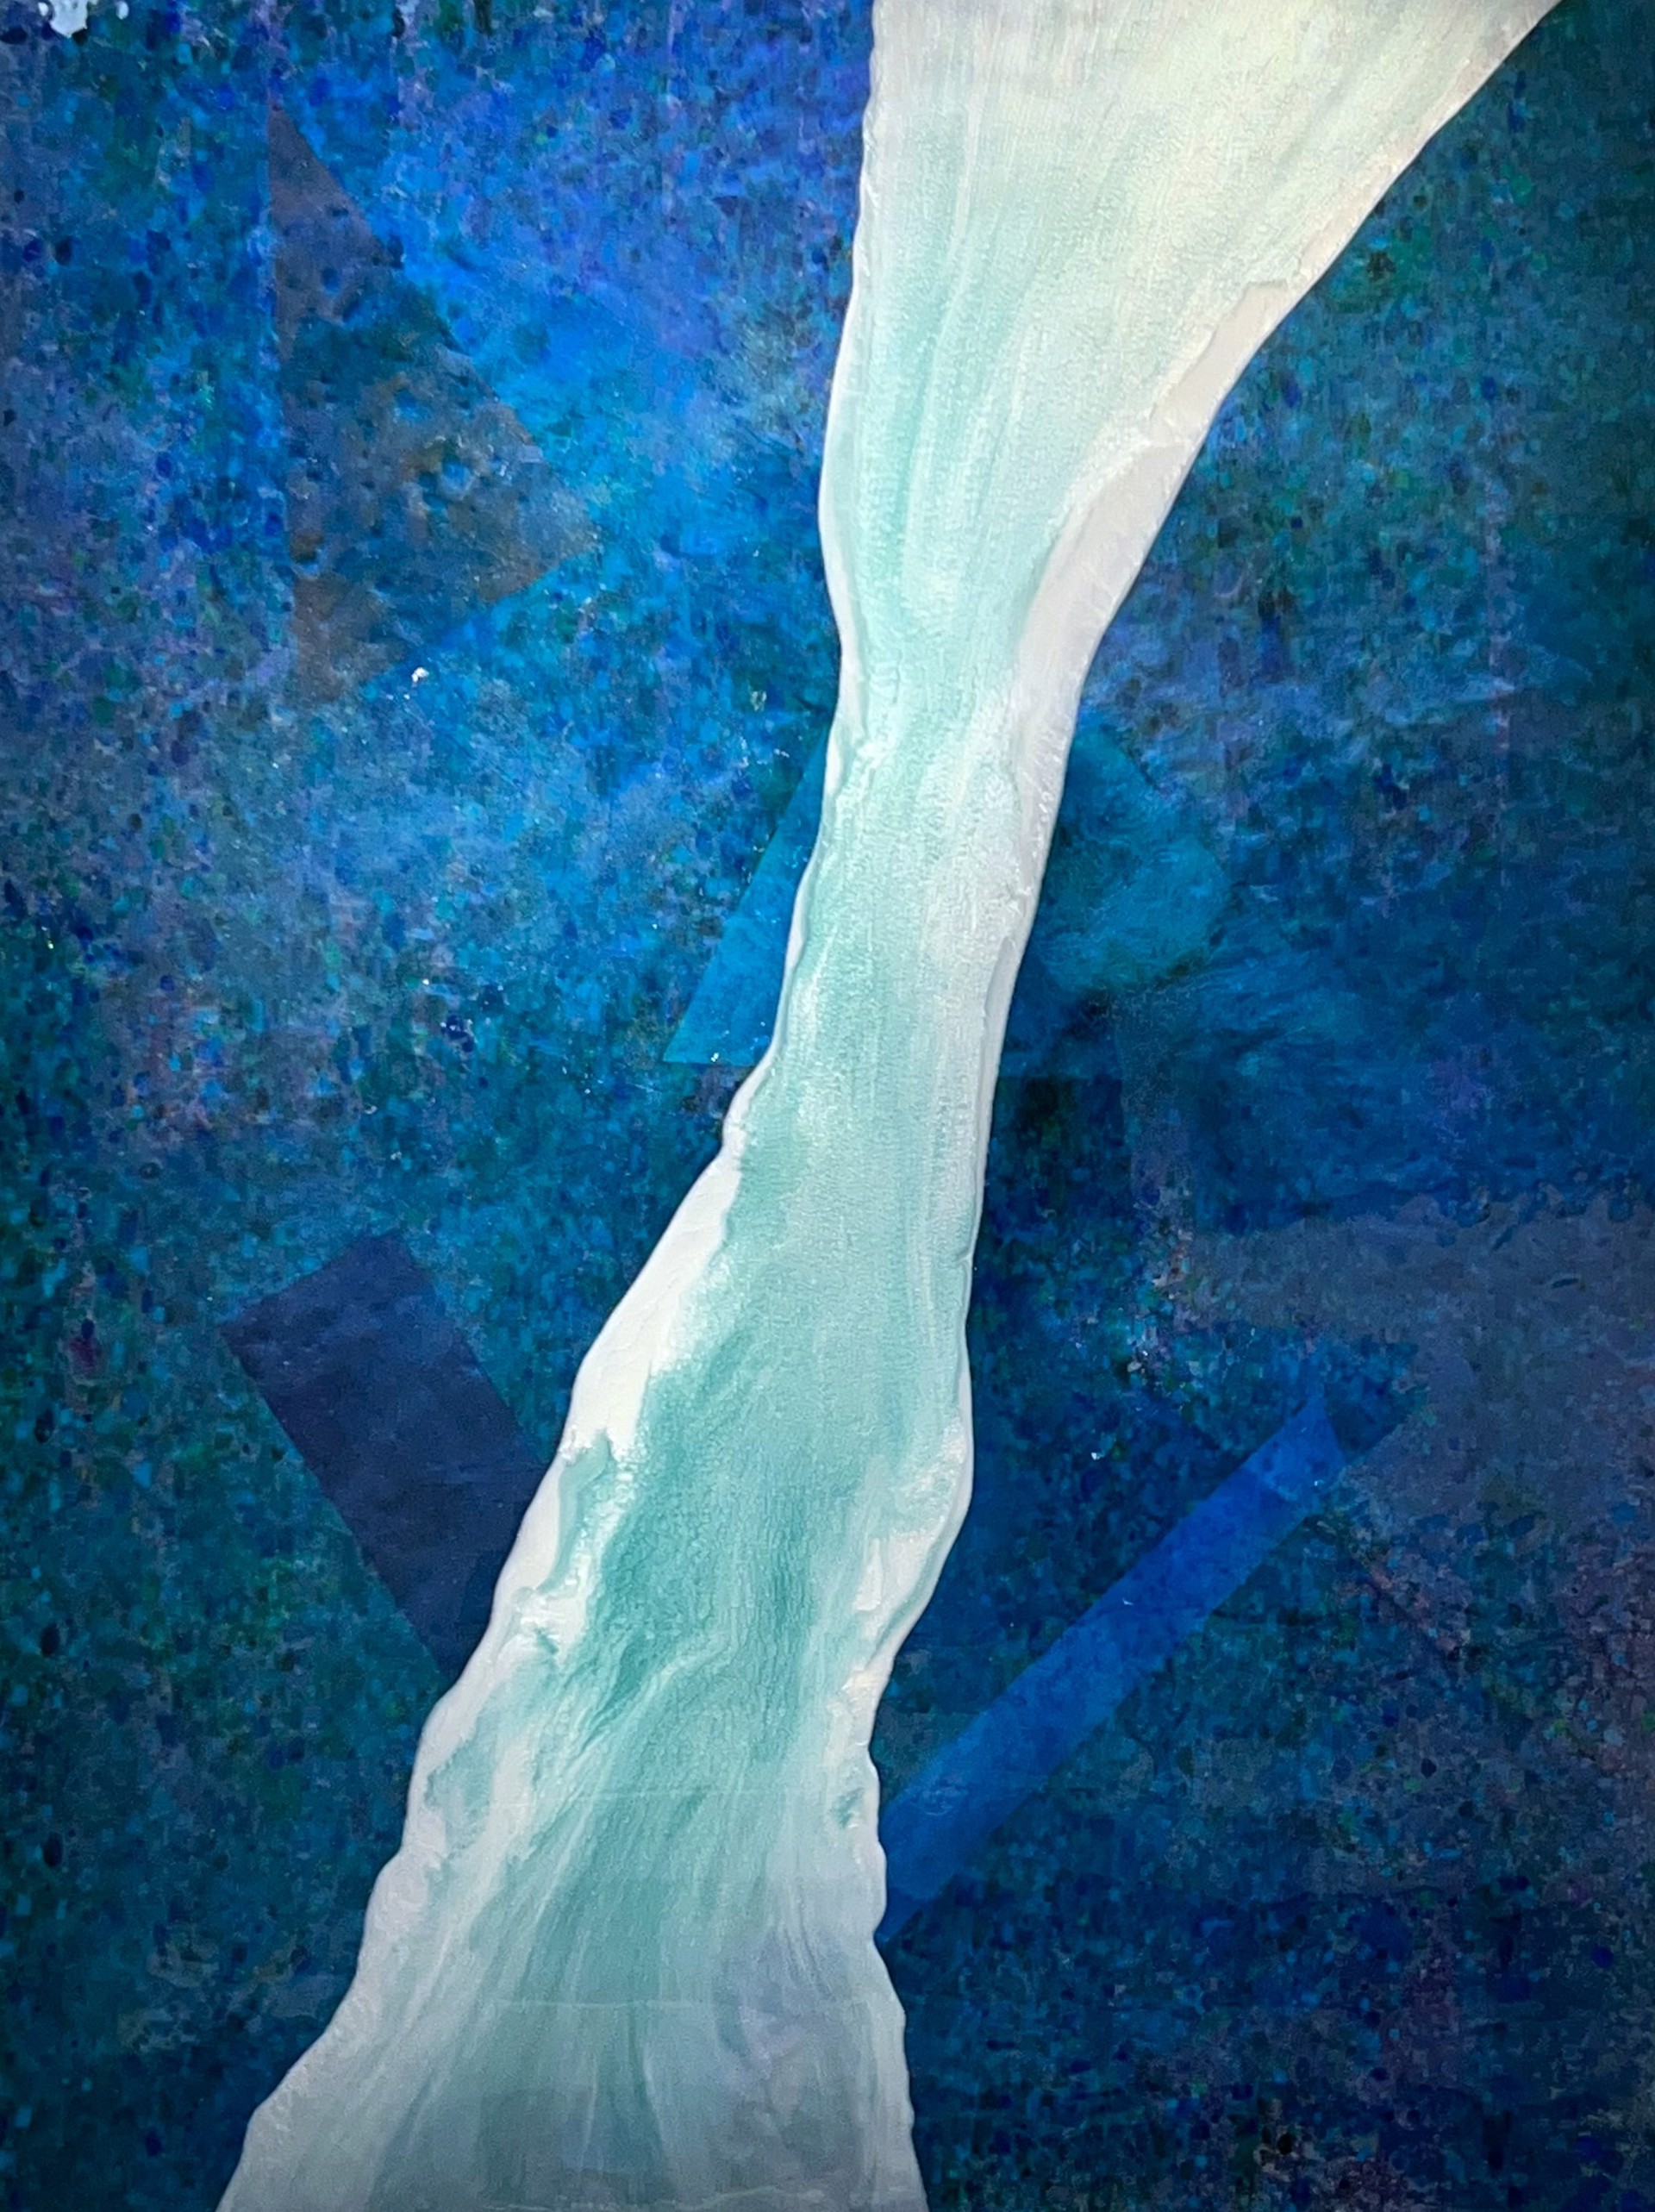 A River Runs Through It by John Lough